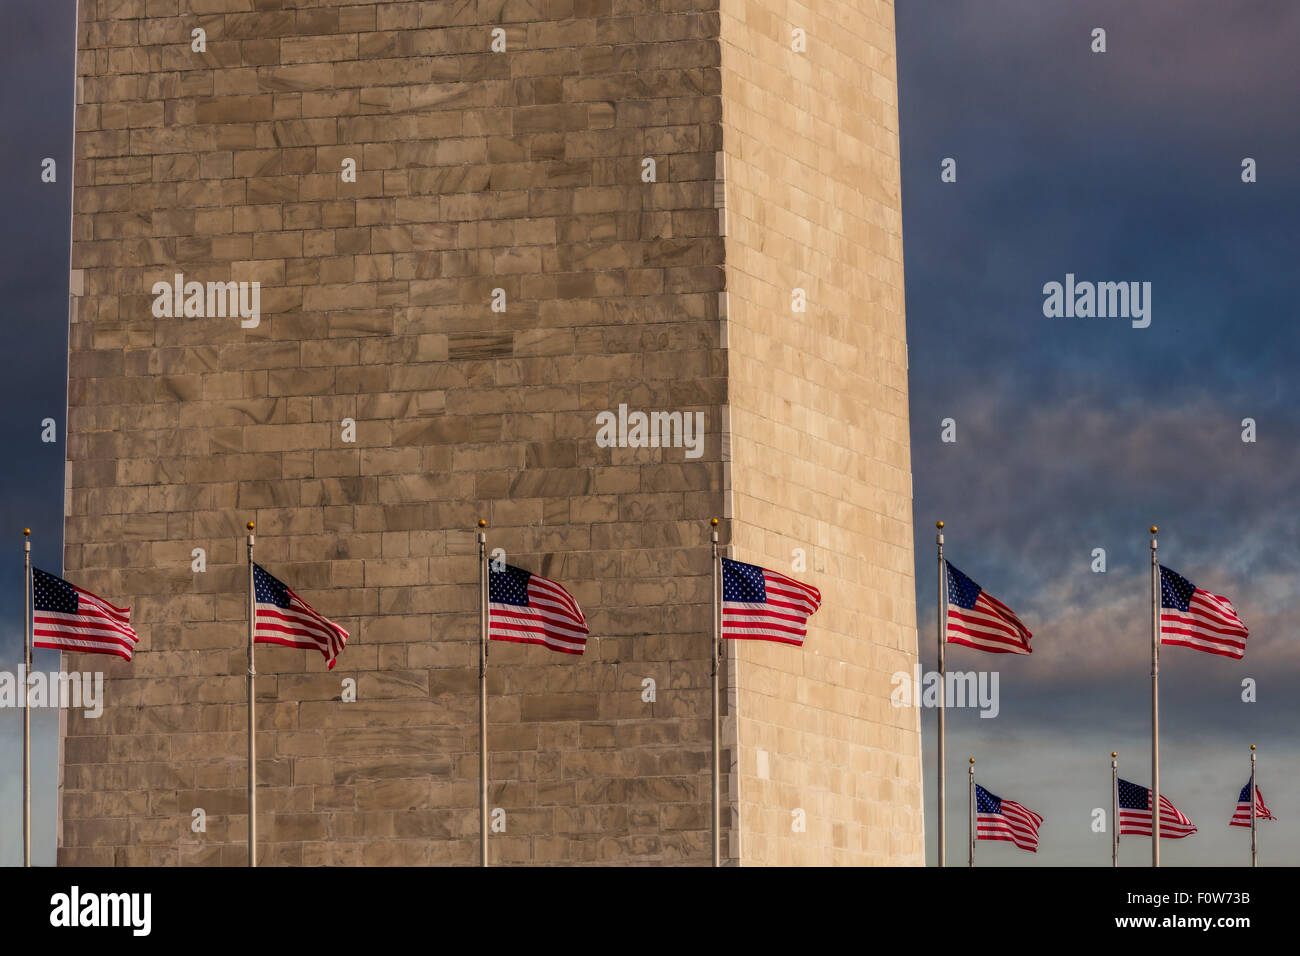 Vista ravvicinata della sezione inferiore del Monumento di Washington con gli Stati Uniti d'America le bandiere che circonda il monumento. Foto Stock